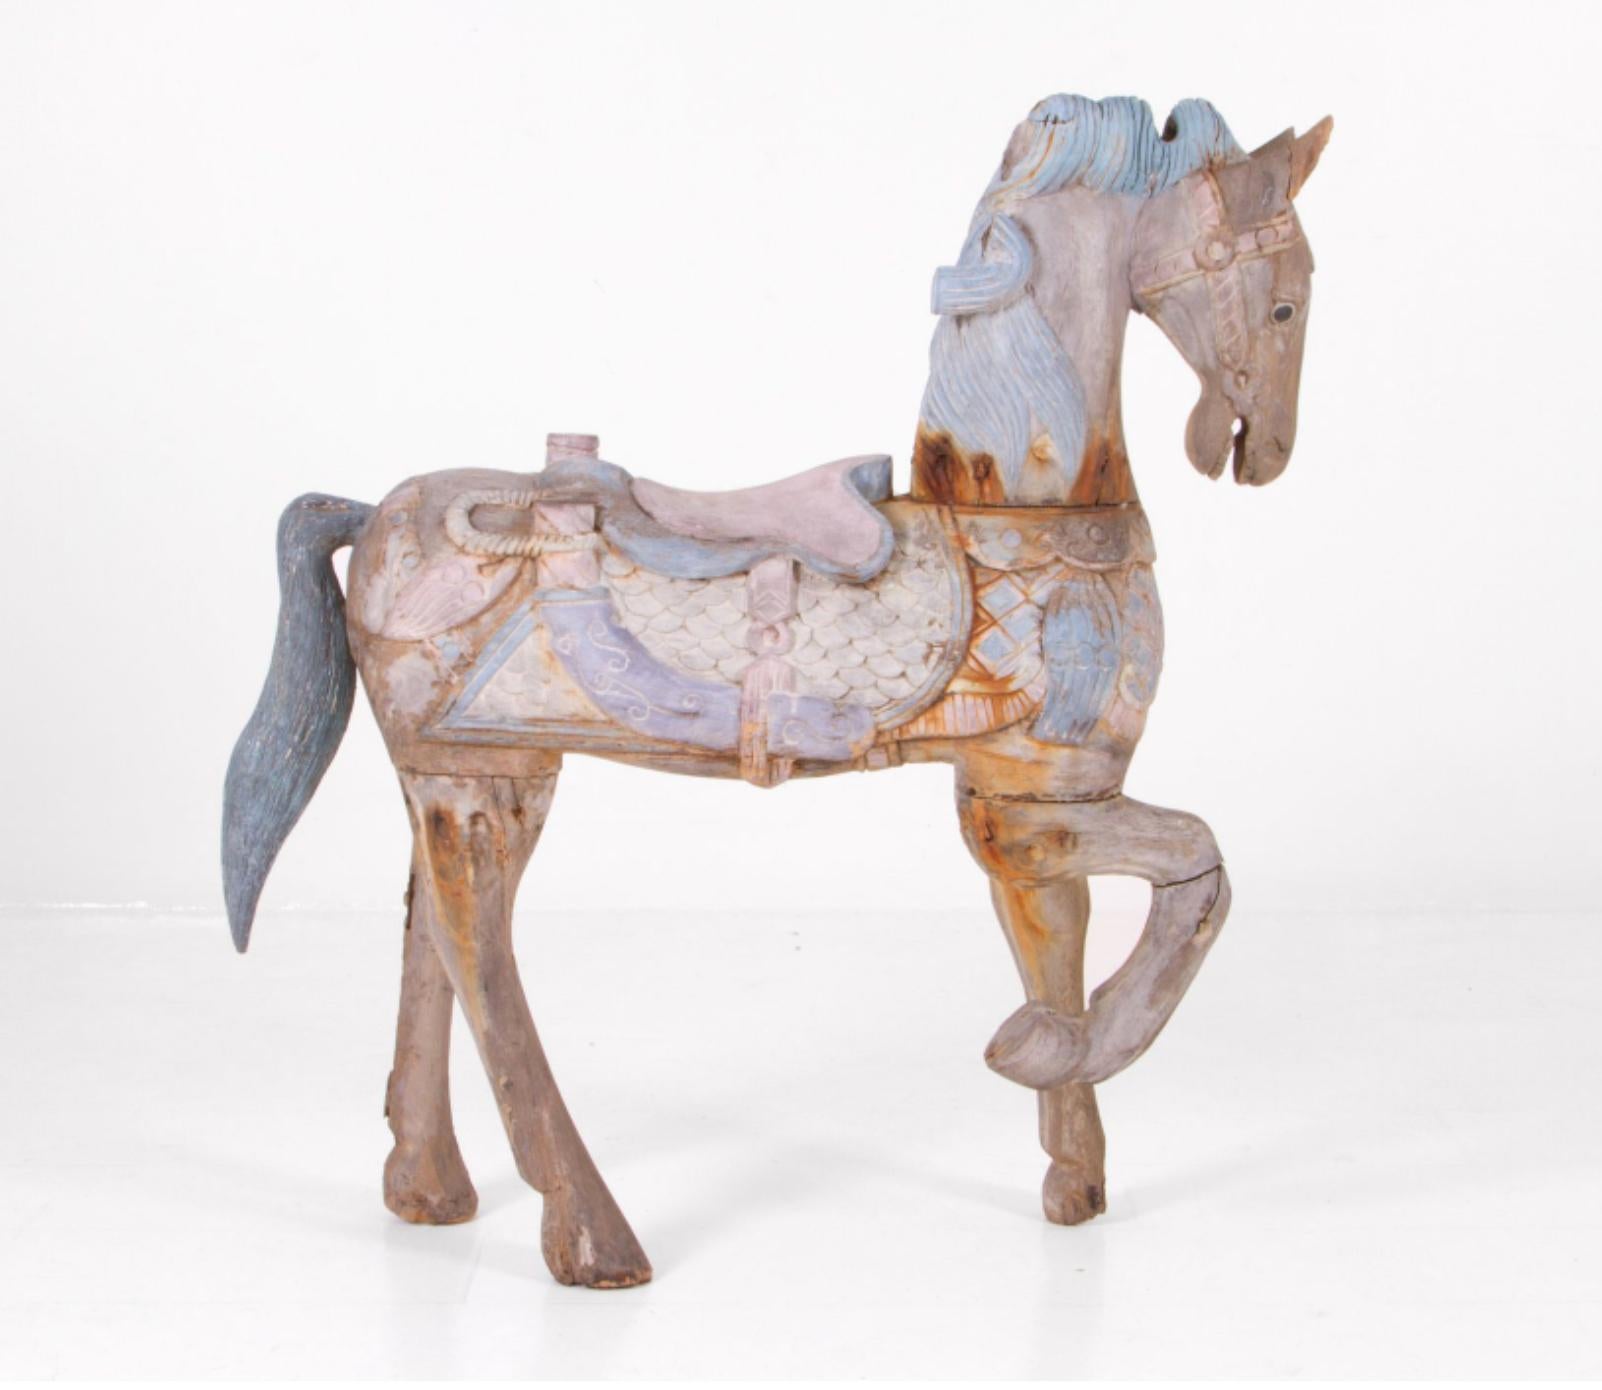 Extraordinaire cheval à bascule sculpté à la main, fabriqué en Italie à la fin du XIXe siècle. La pièce porte encore sa peinture authentique en bleu clair, rose et velours. L'état est bon et l'usure correspond à l'âge et à l'utilisation. Aucune